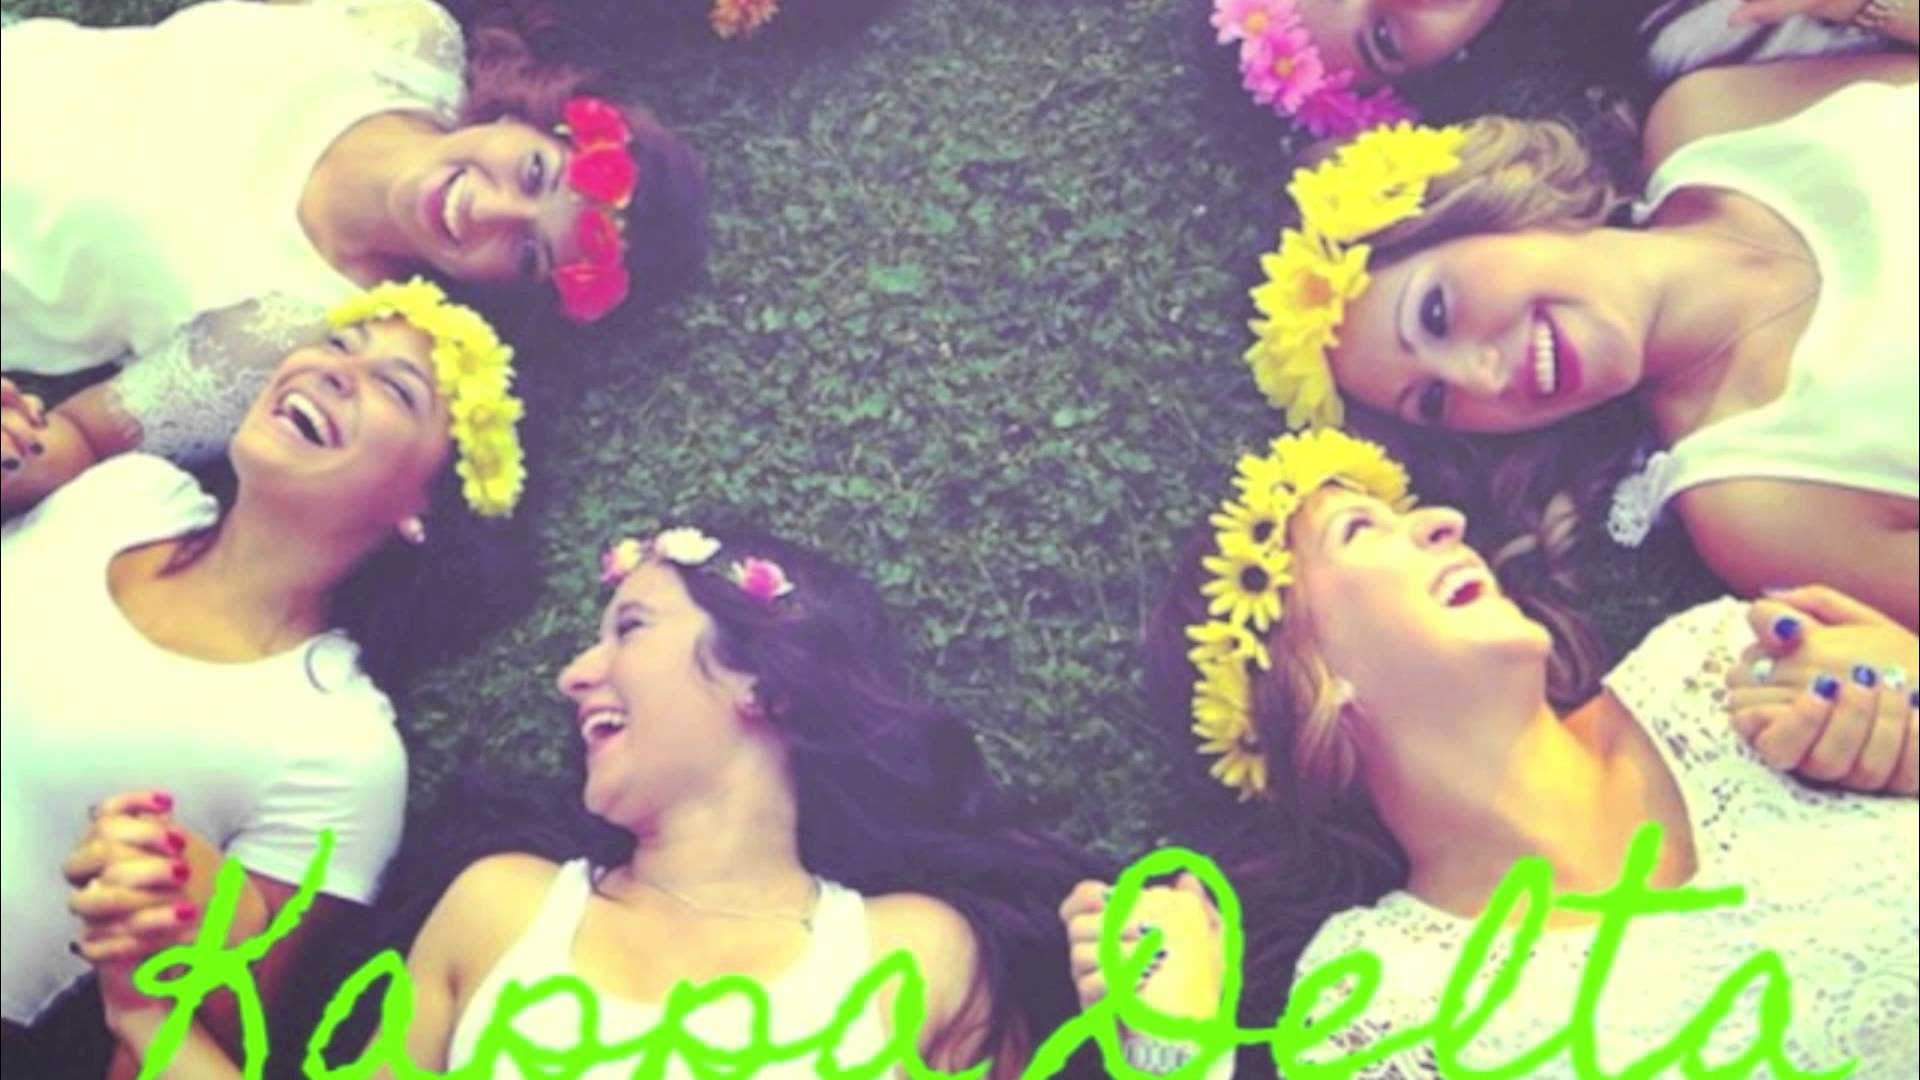 EIU Kappa Delta Recruitment 2014 - YouTube